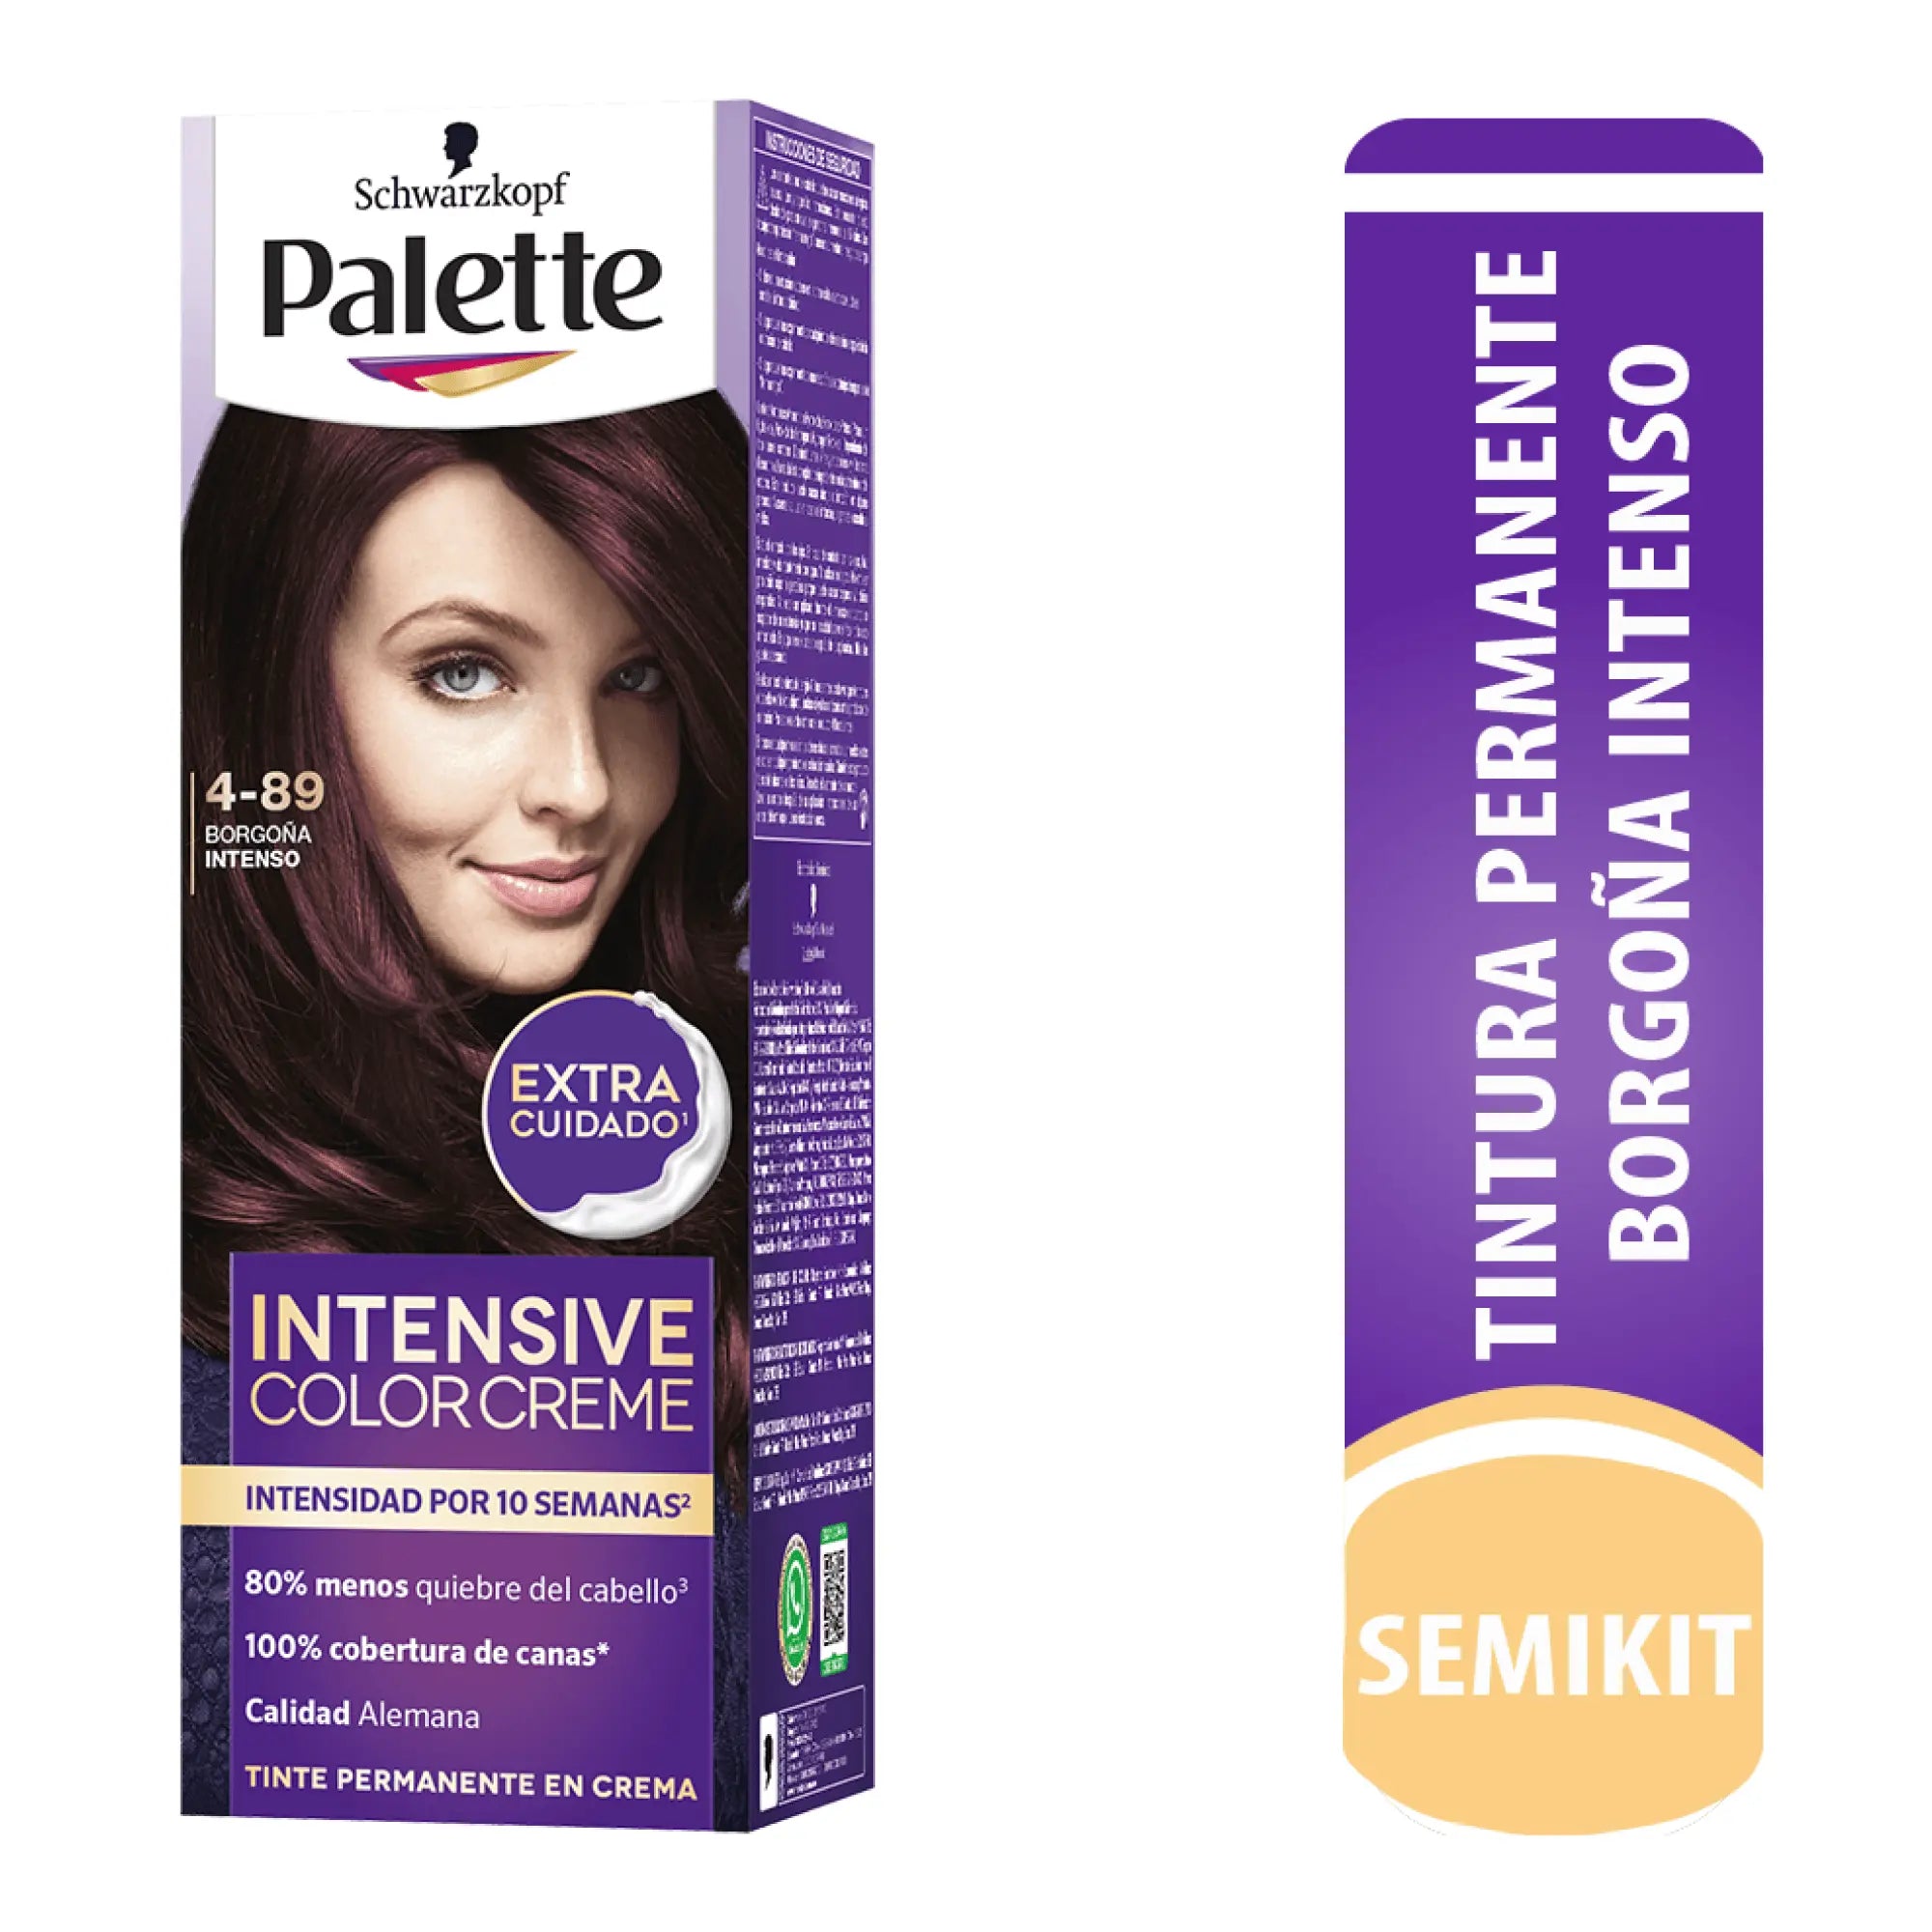 Palette Intensive Color Creme Permanente 4-89 Borgoña Intenso - Magic Mechas